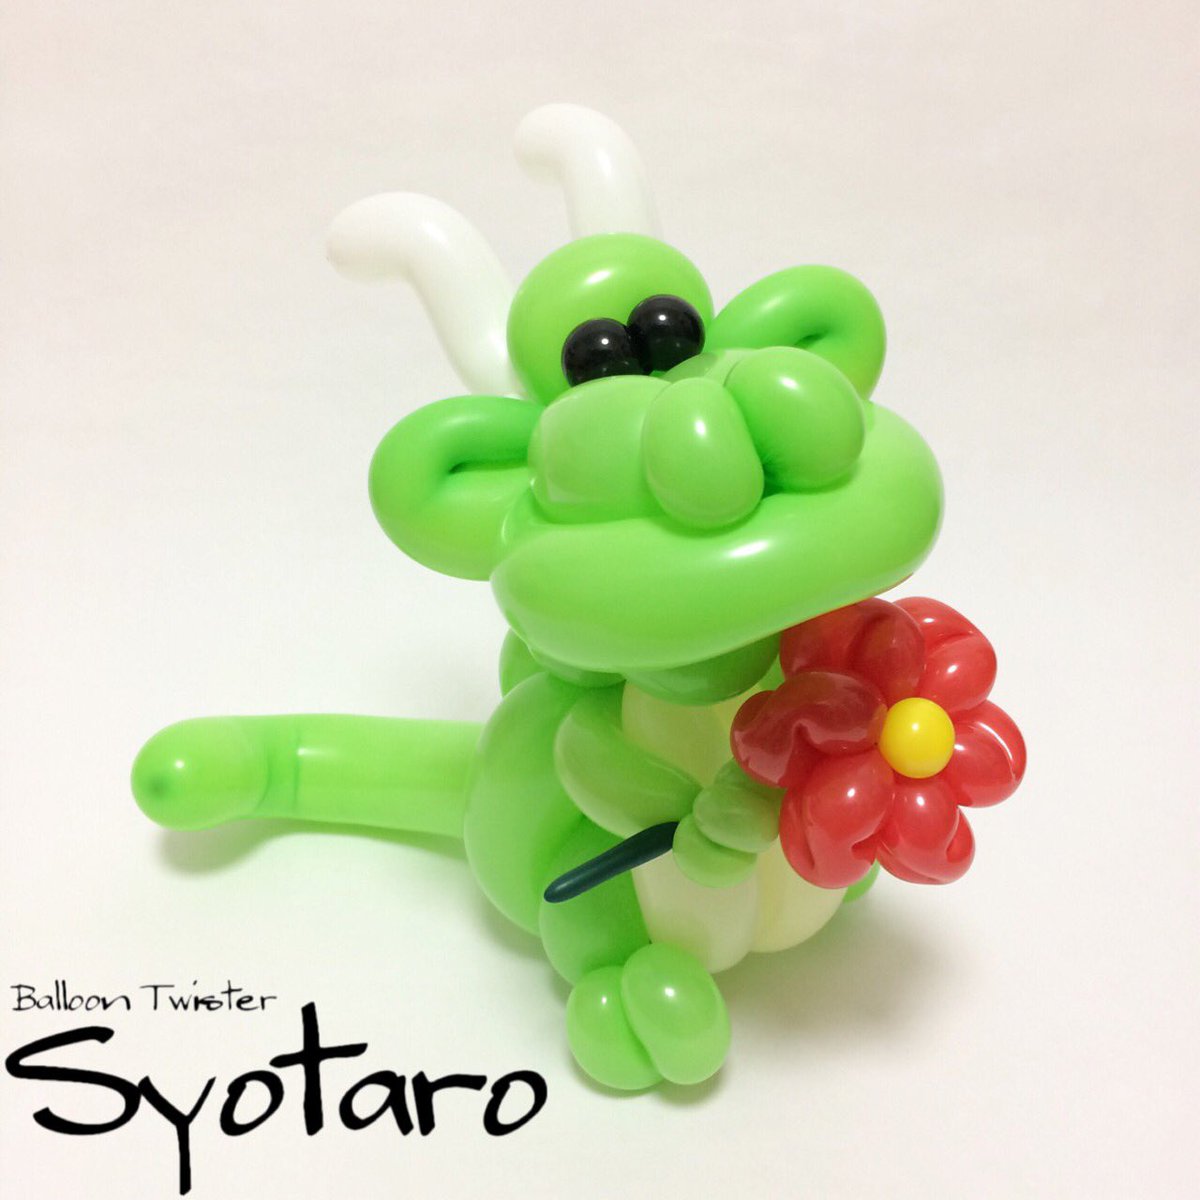 Balloon Syotaro בטוויטר Puppy Dragon アニバルズ バルーンアート ドラゴン ドラゴンかわいい 皆さまに感謝 作品投稿 再開します T Co Yfnssnkhro